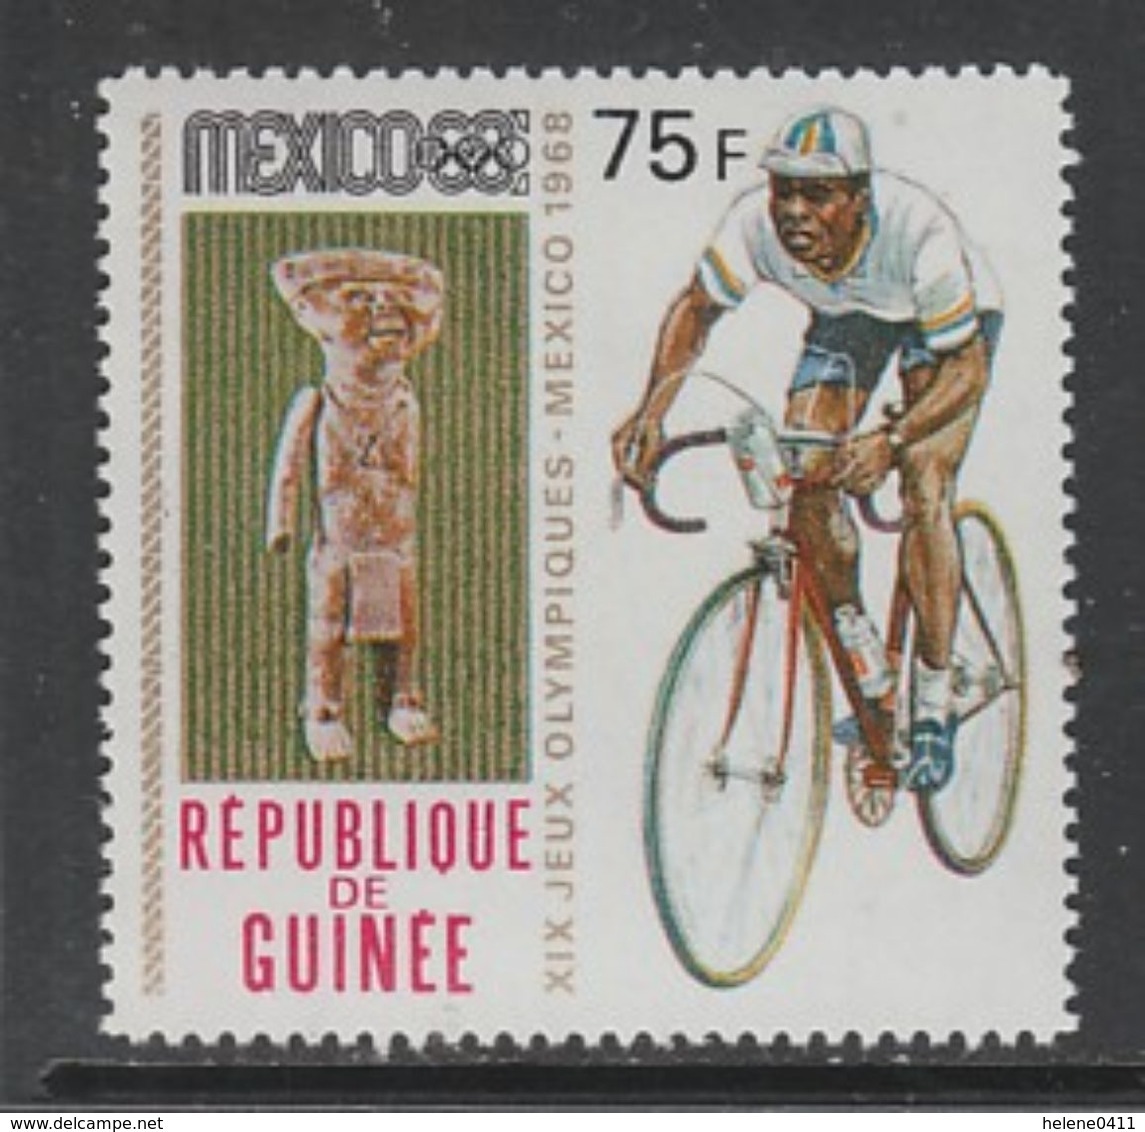 TIMBRE NEUF DE GUINEE - CYCLISME (J.O. DE MEXICO) N° Y&T 379 - Cycling